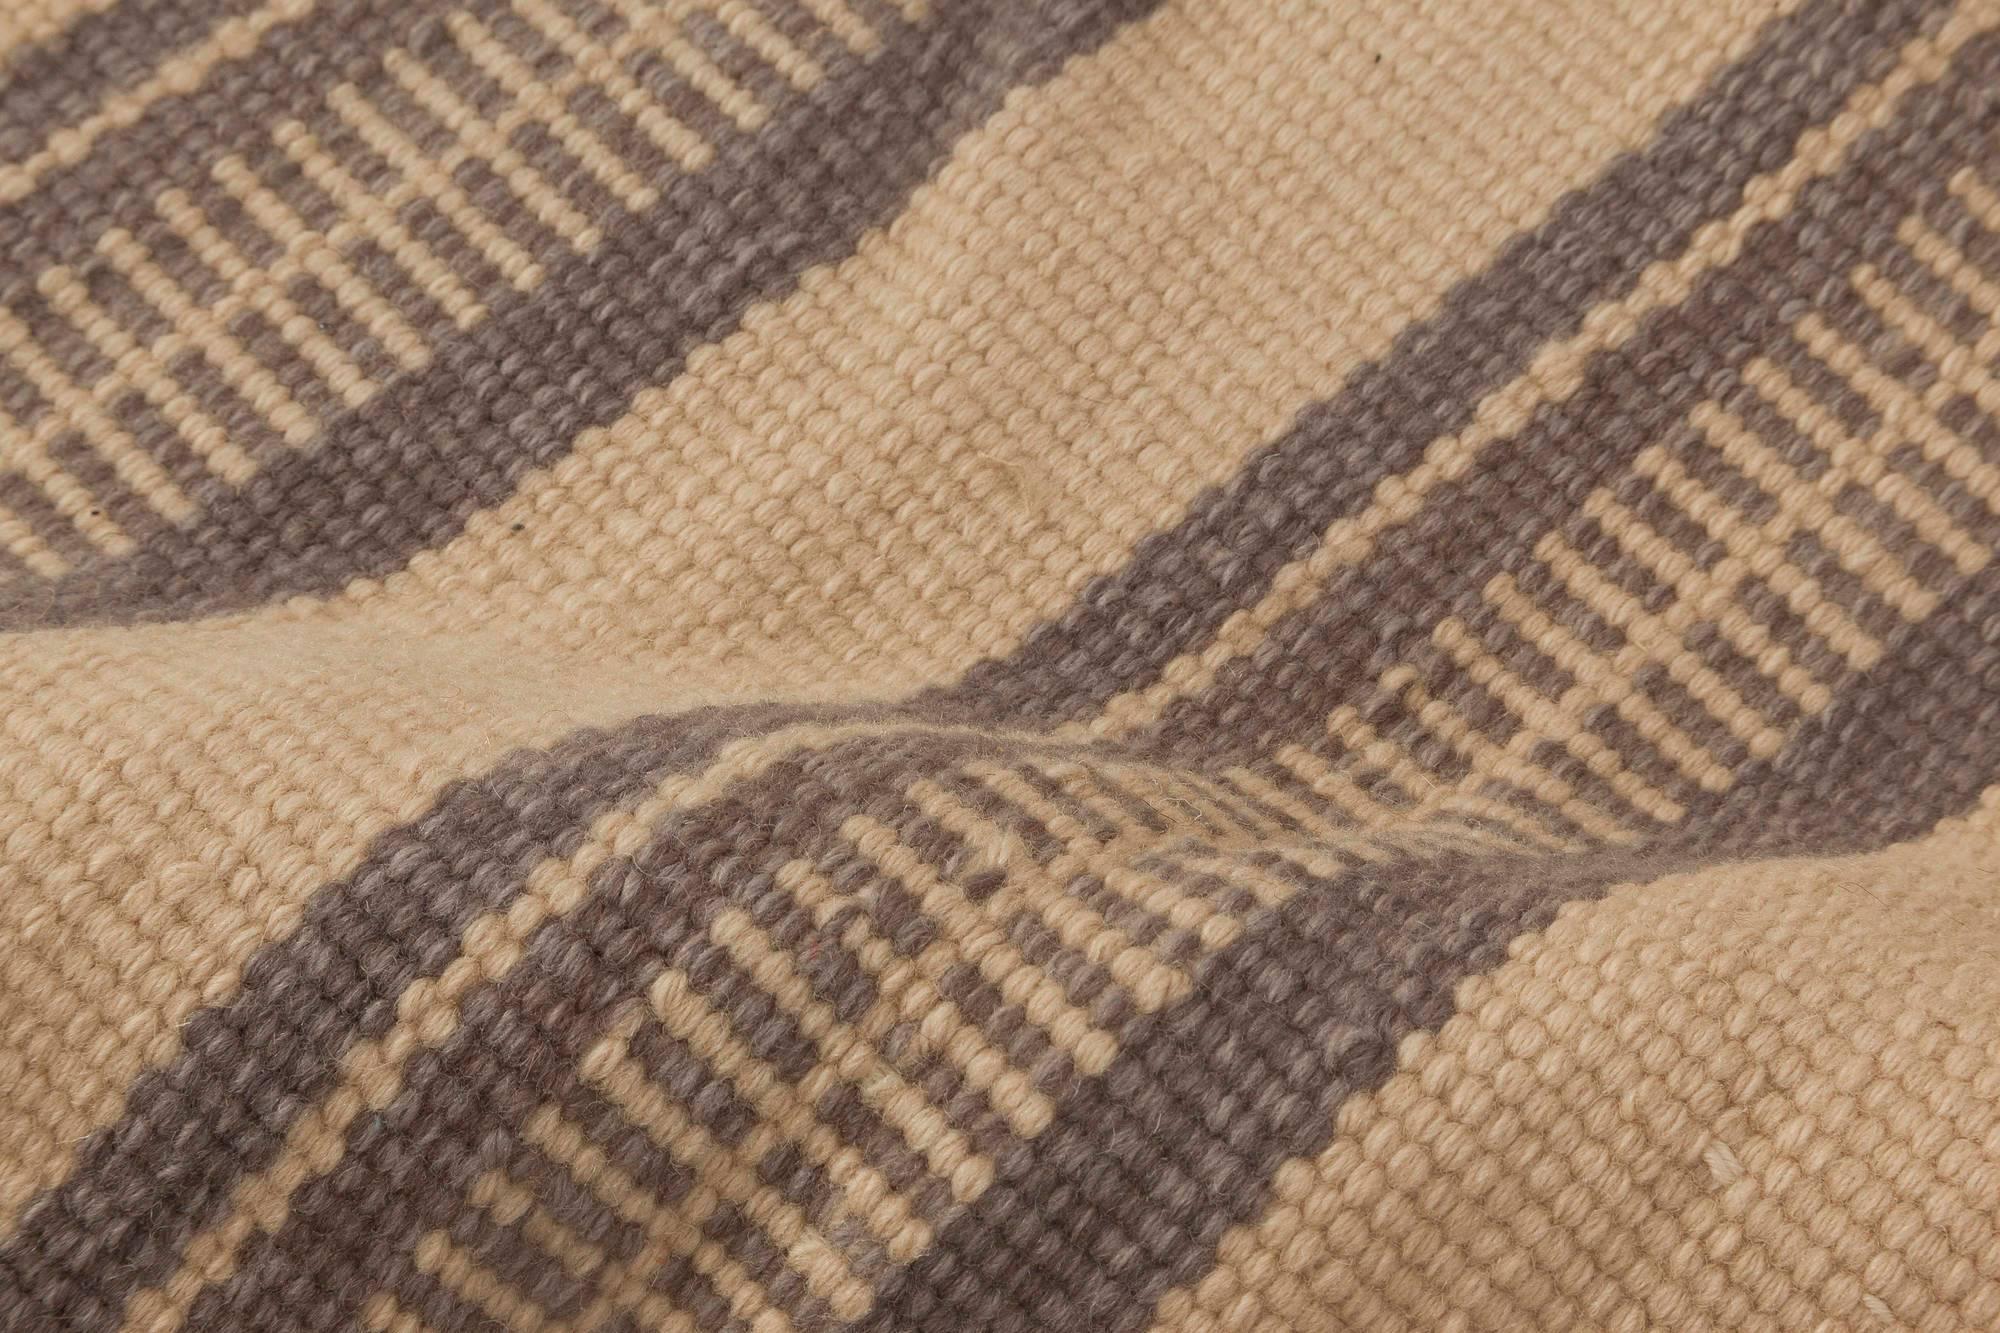 Modern striped beige and brown handmade wool rug by Doris Leslie Blau
Size: 5'7